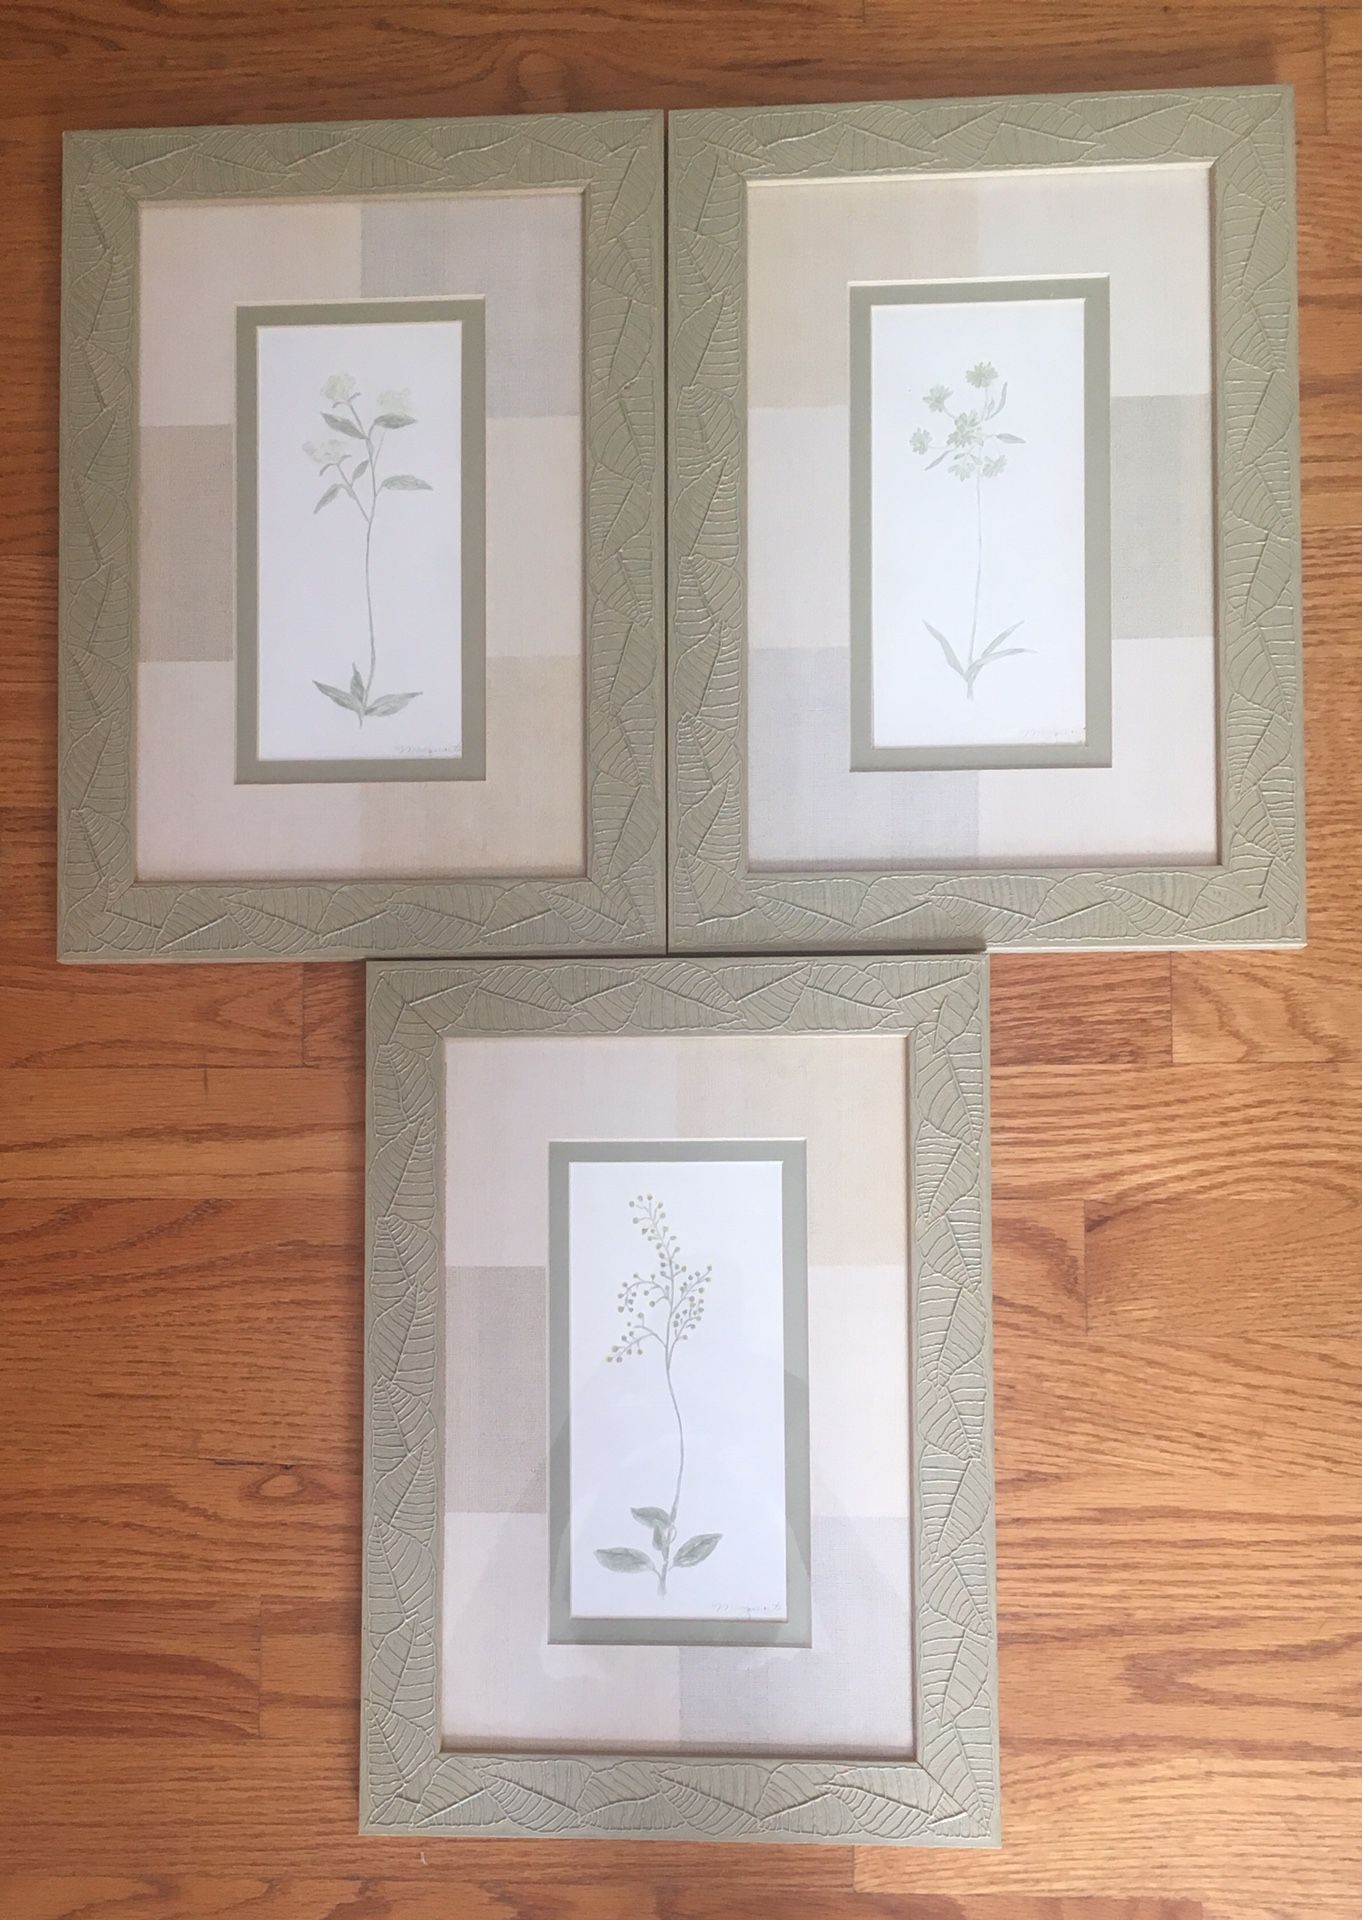 3 Framed Botanical Pictures